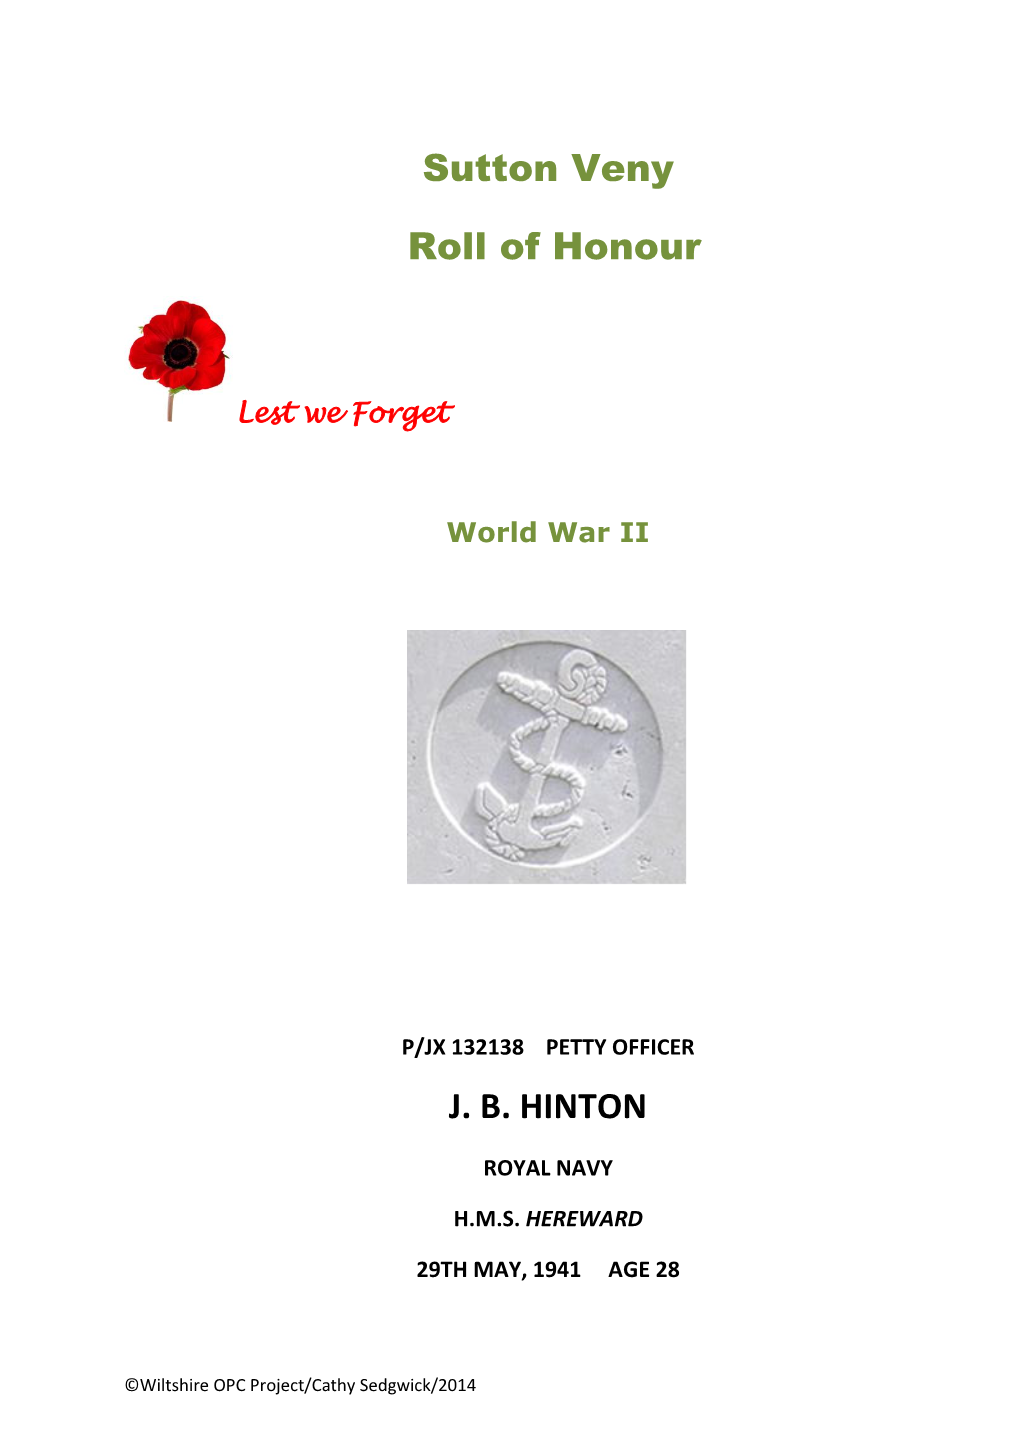 Sutton Veny Roll of Honour J. B. HINTON